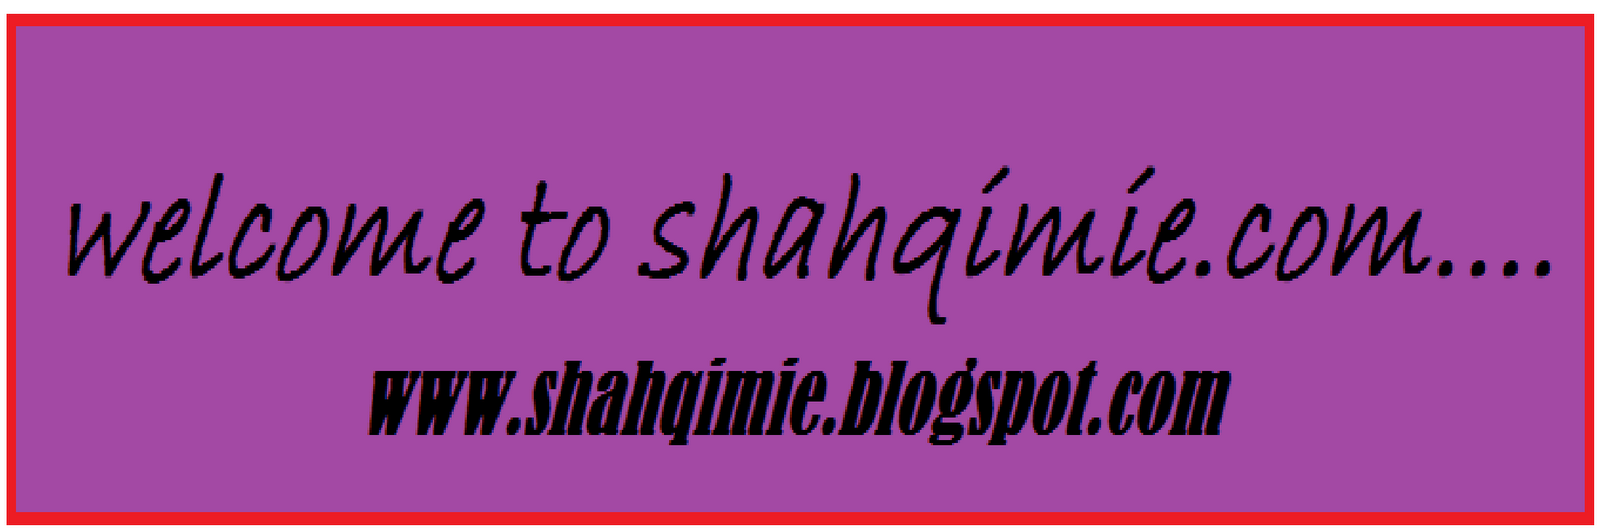 Shahqime.com